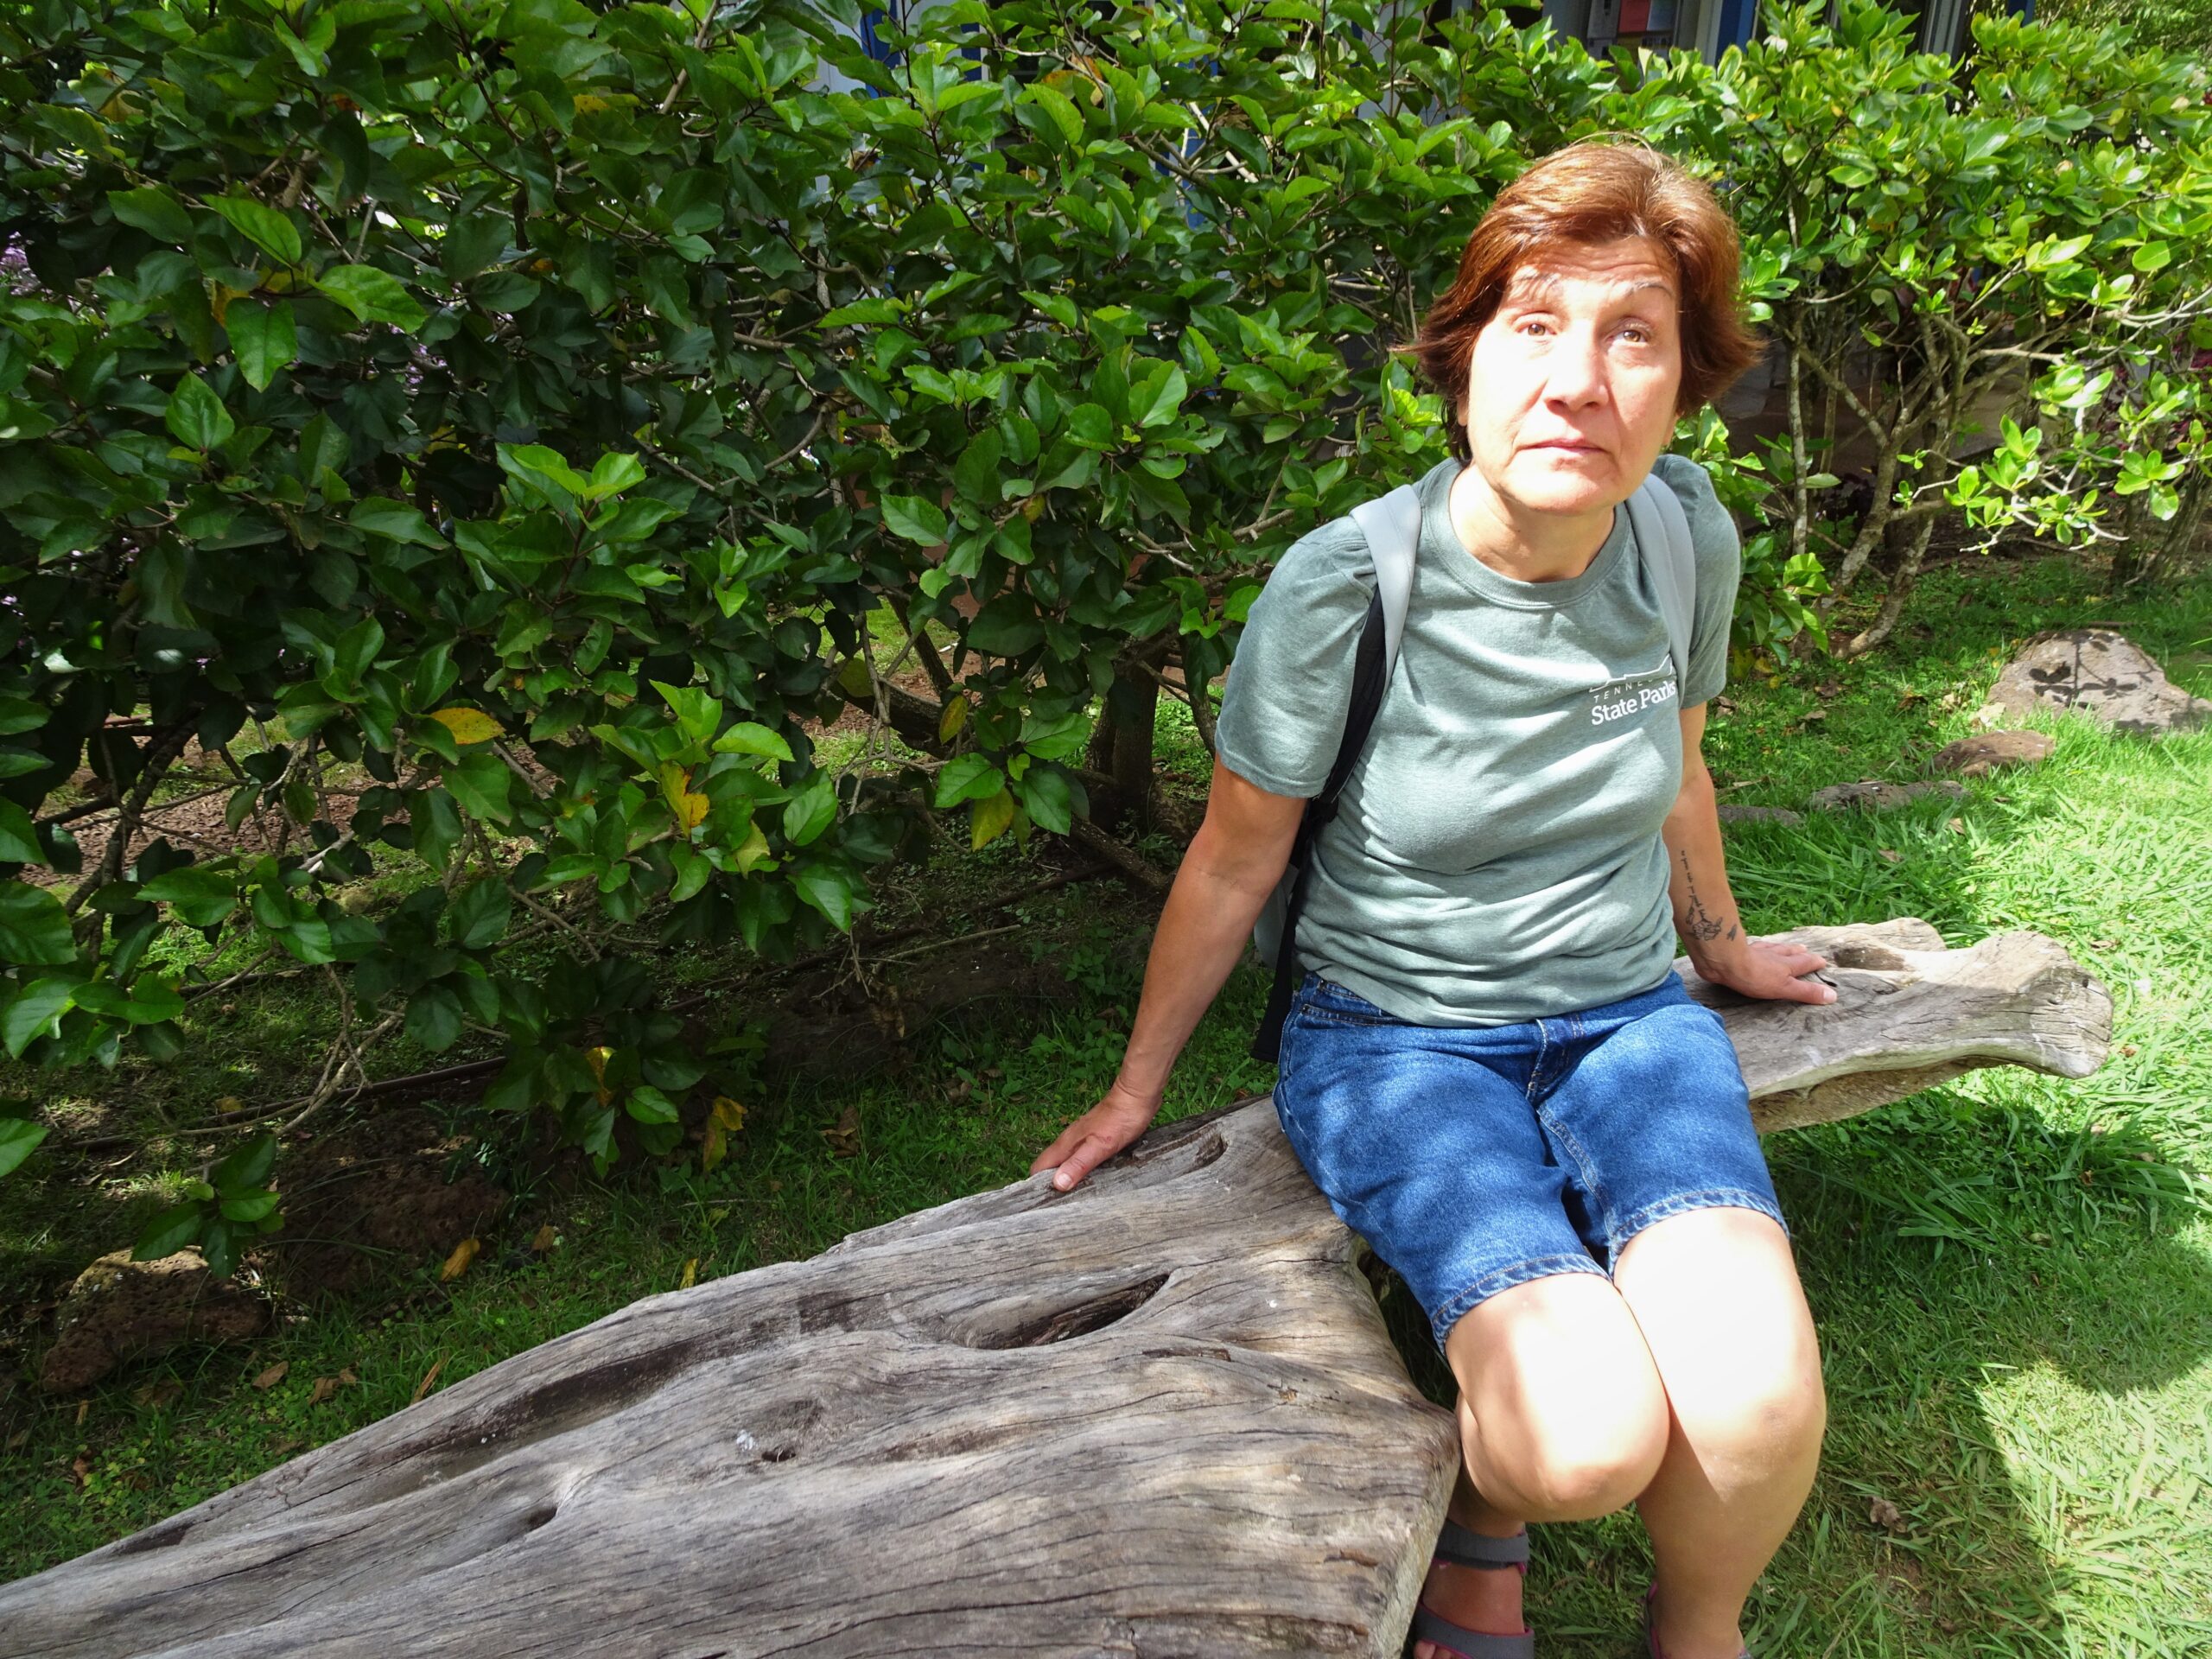 Descripción de la foto de portada: Margarita aparece a la derecha de la foto sentada sobre un tronco y con vegetación detrás. La foto fue tomada durante un viaje a Hawai.